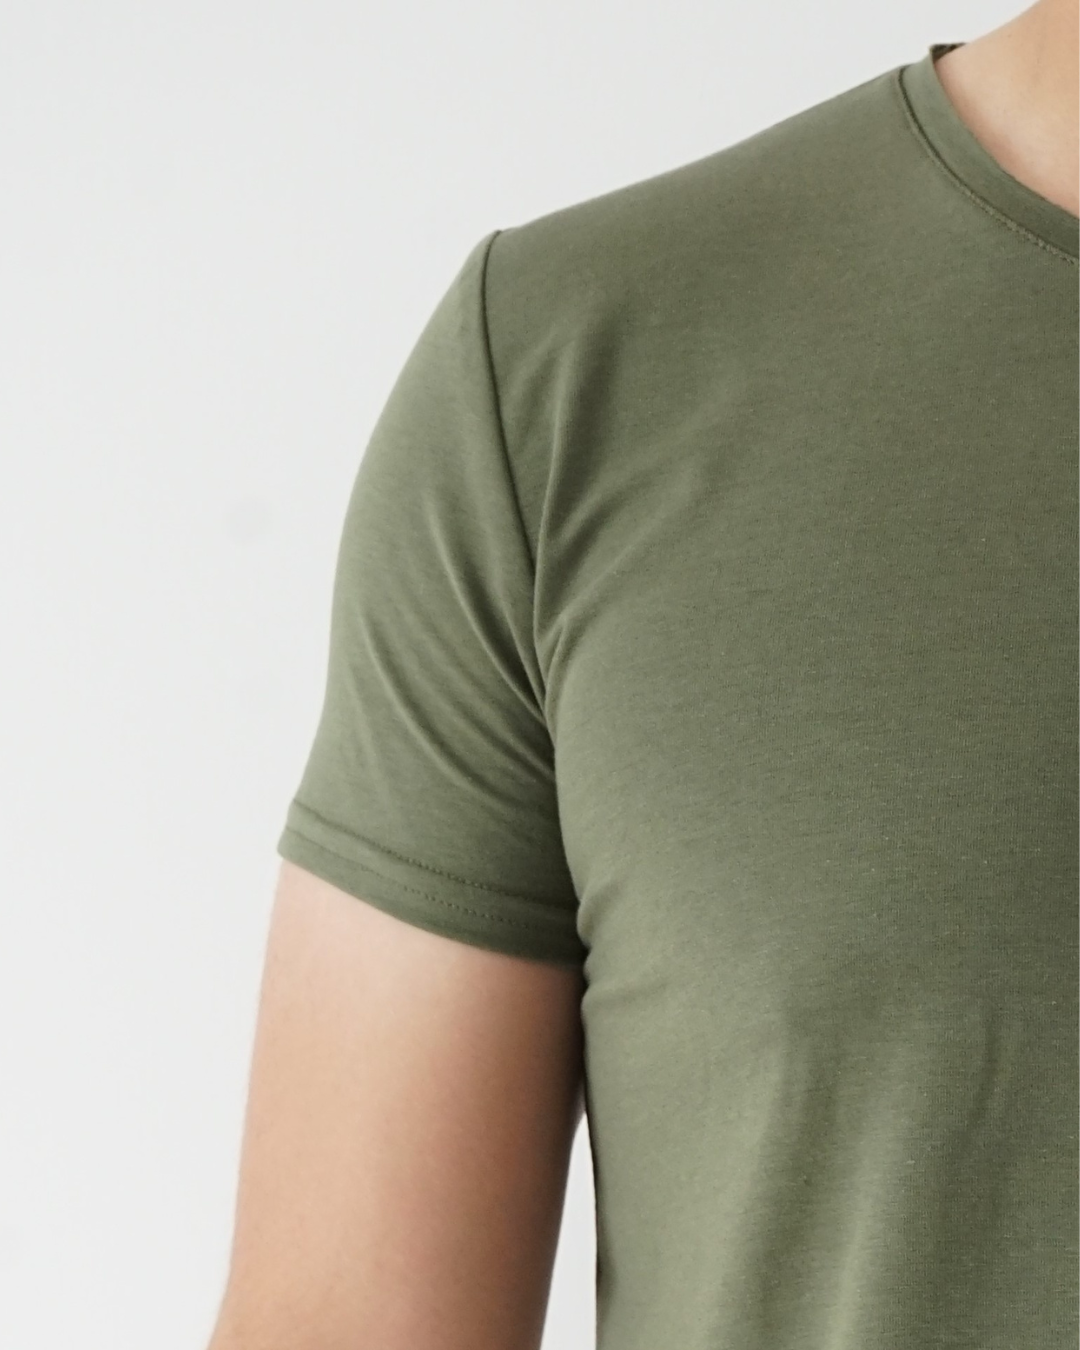 Musk Green T-shirt - Short Sleeve Wide Neck Original Bottom